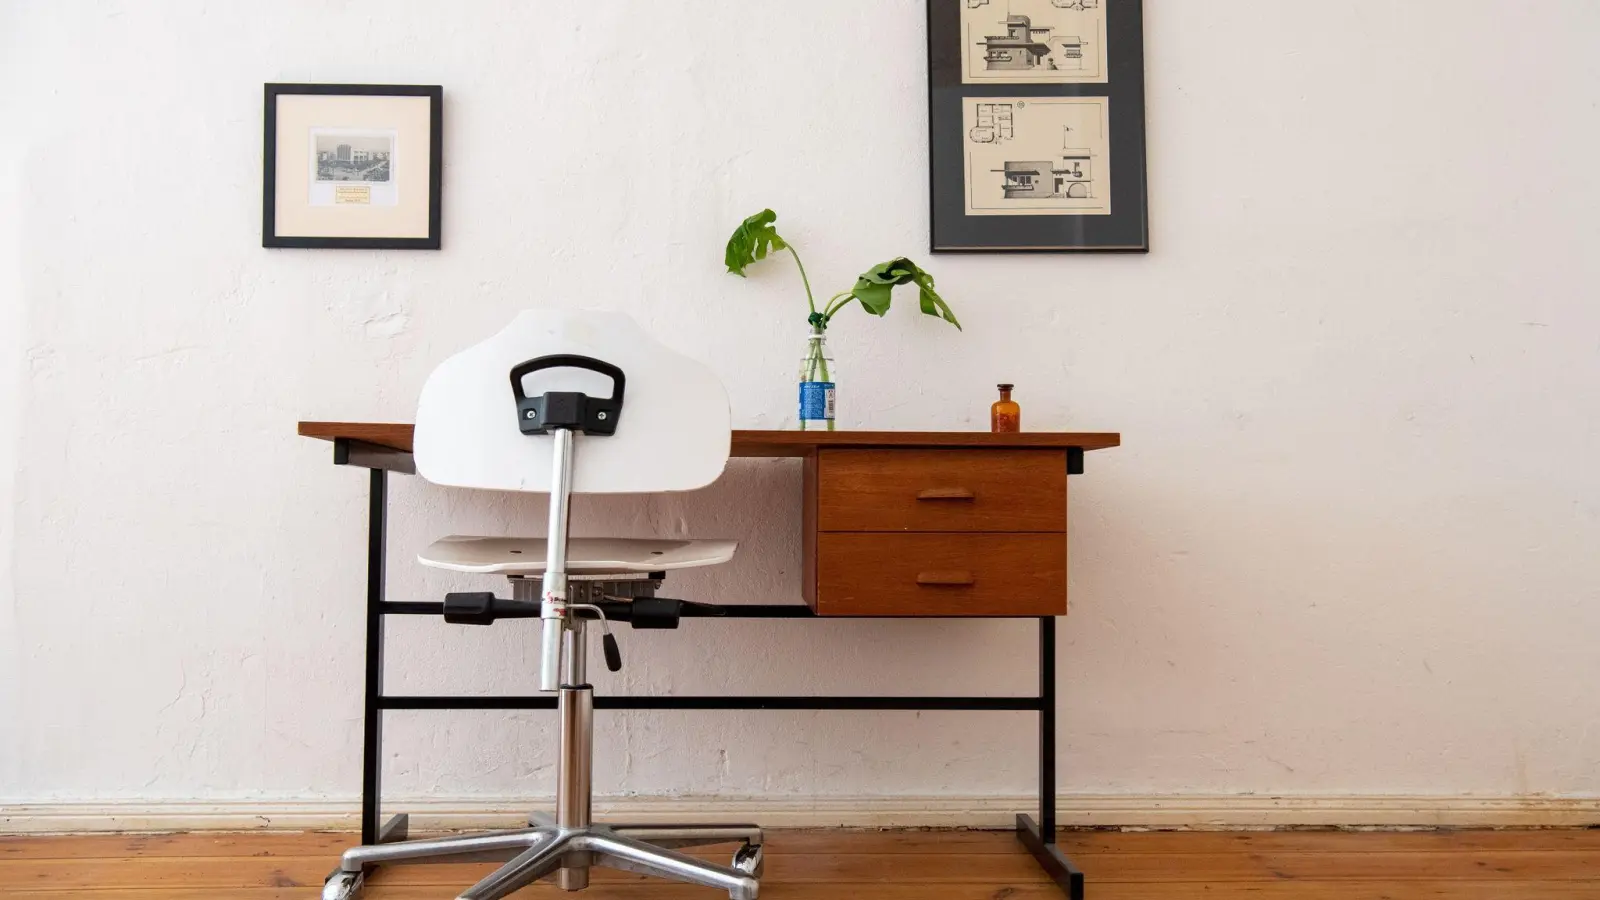 Ein minimalistisch eingerichtetes Zimmer ist aufgeräumt, funktional und reduziert auf das Nötigste. Aber natürlich kann es Deko geben. (Foto: Bernd Diekjobst/dpa-tmn)